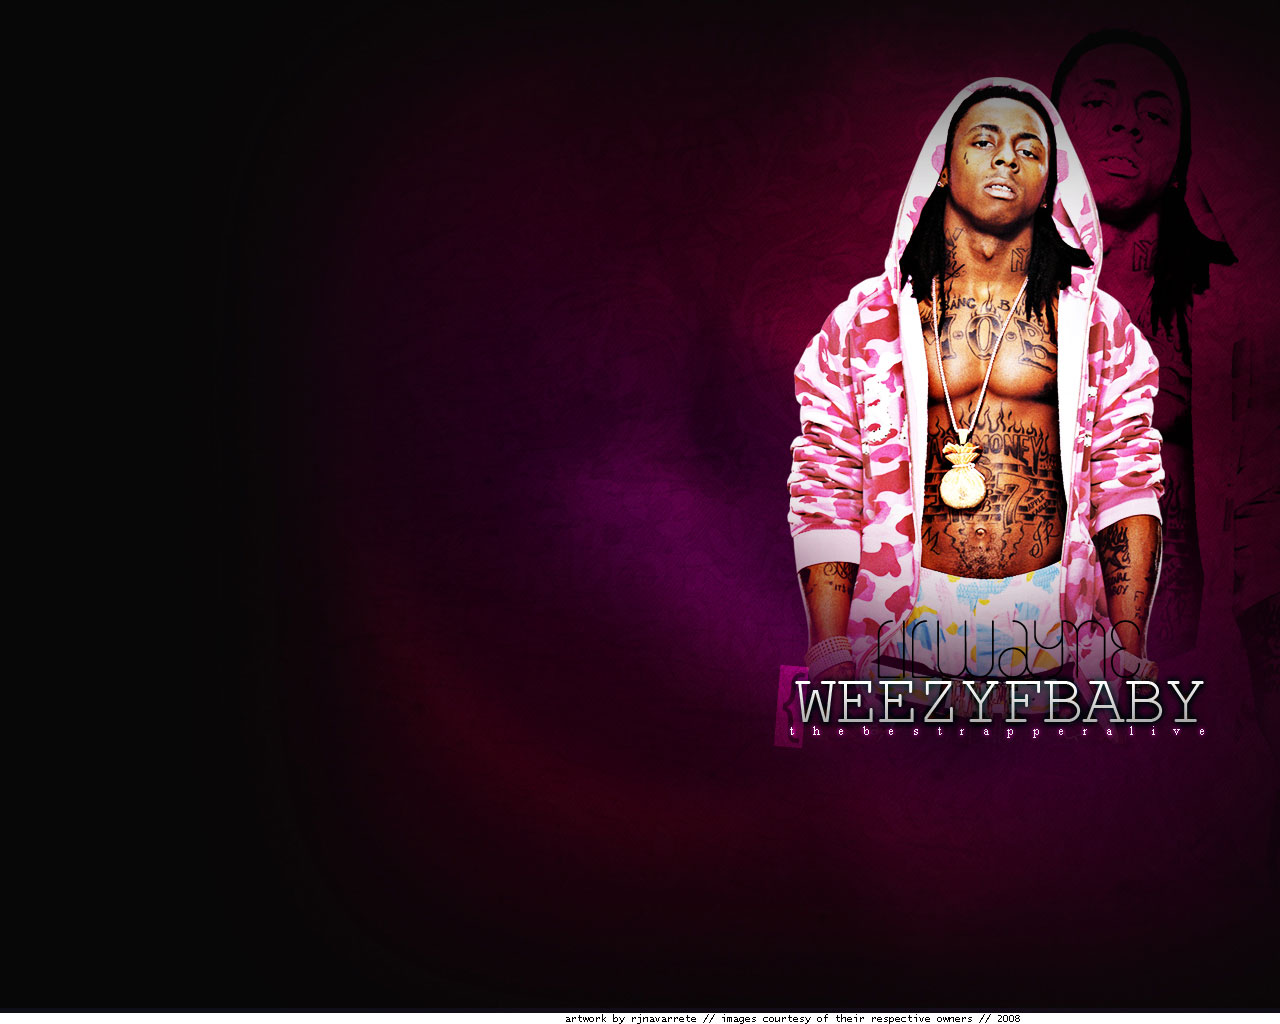  Lil Wayne HQ Background Images